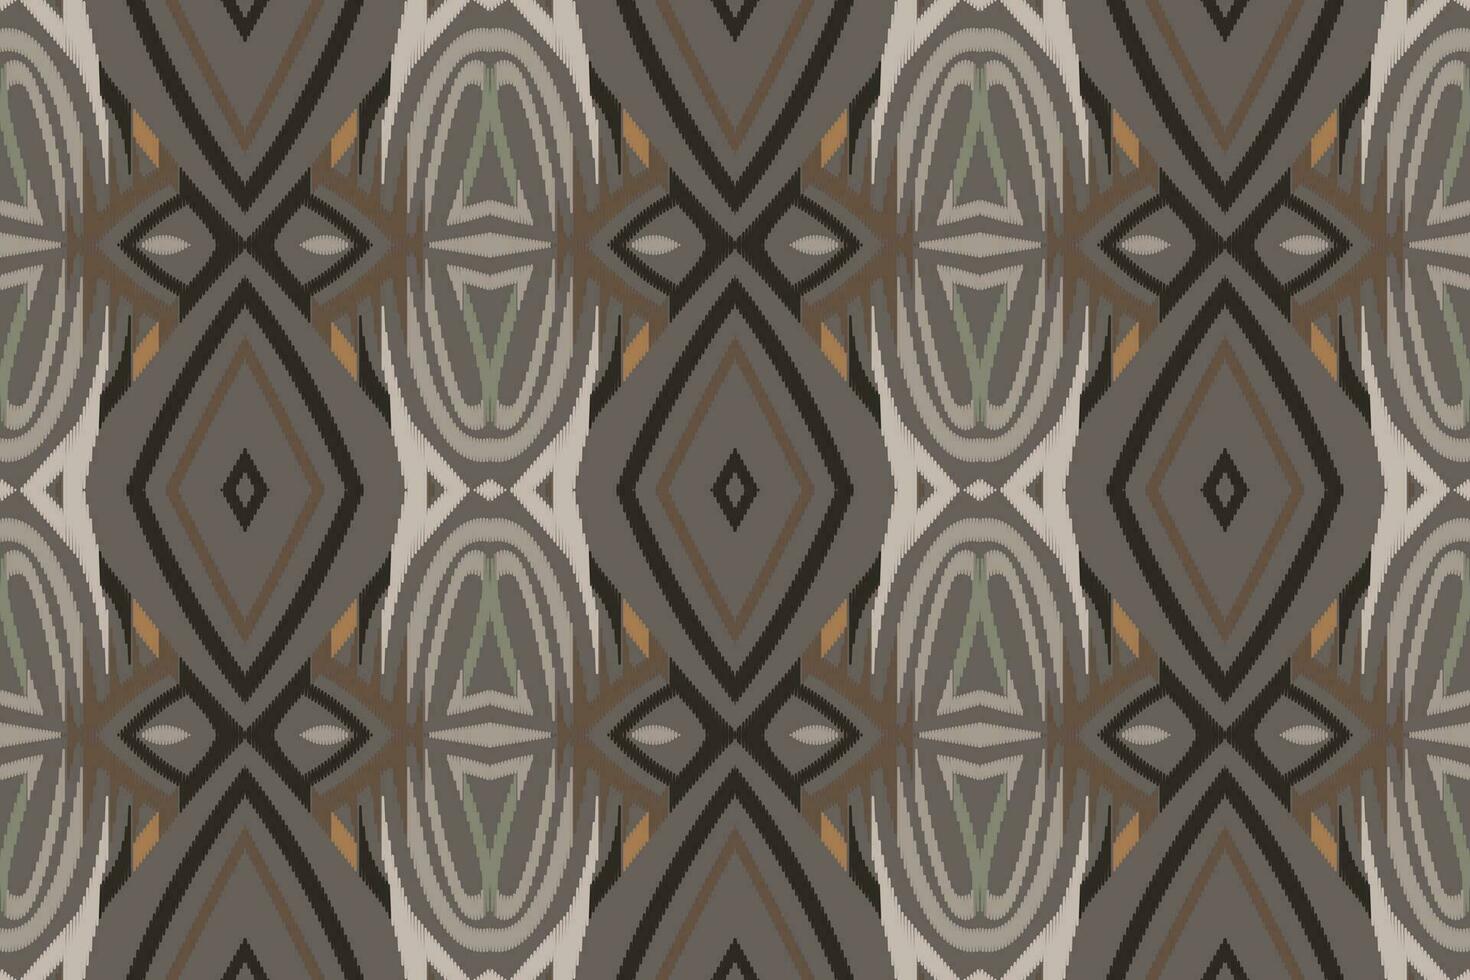 ikat blommig paisley broderi bakgrund. ikat textur geometrisk etnisk orientalisk mönster traditionell.aztec stil abstrakt vektor illustration.design för textur, tyg, kläder, inslagning, sarong.